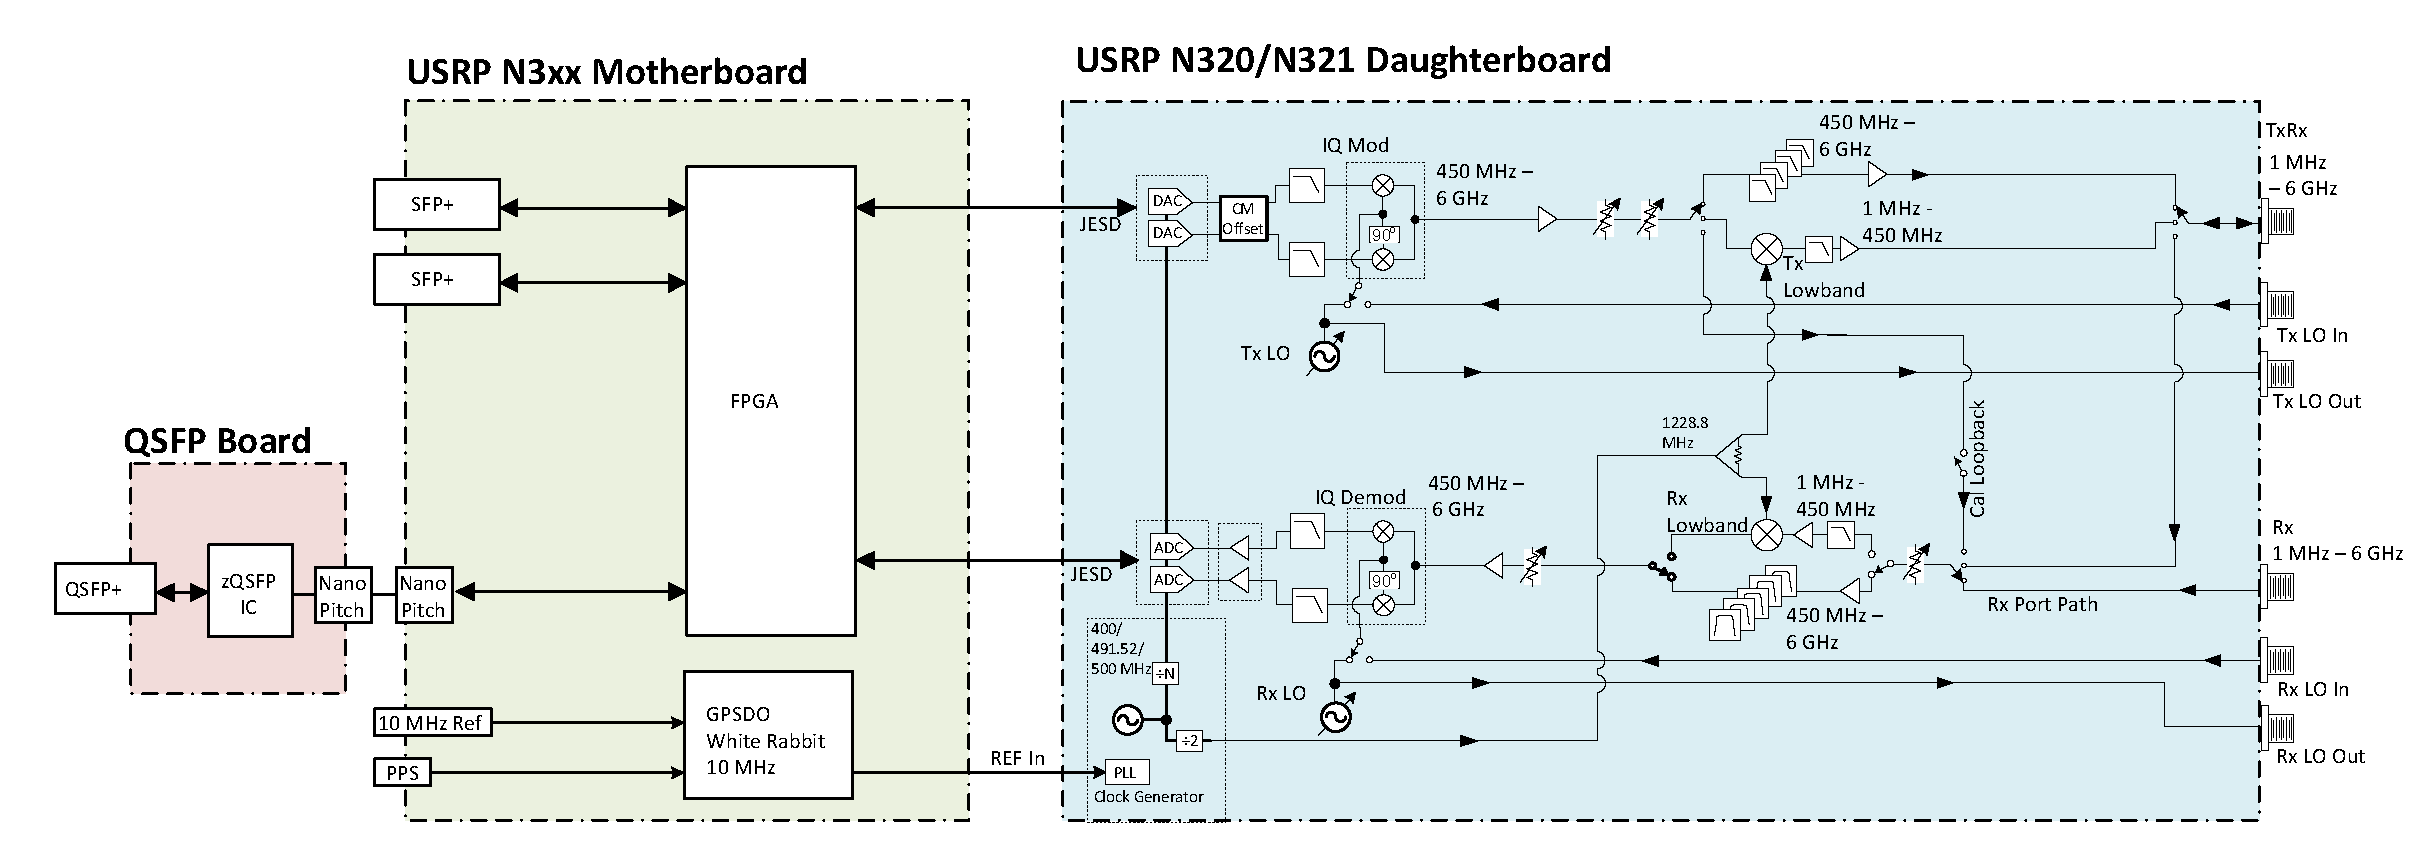 Block Diagram of USRP N320/321